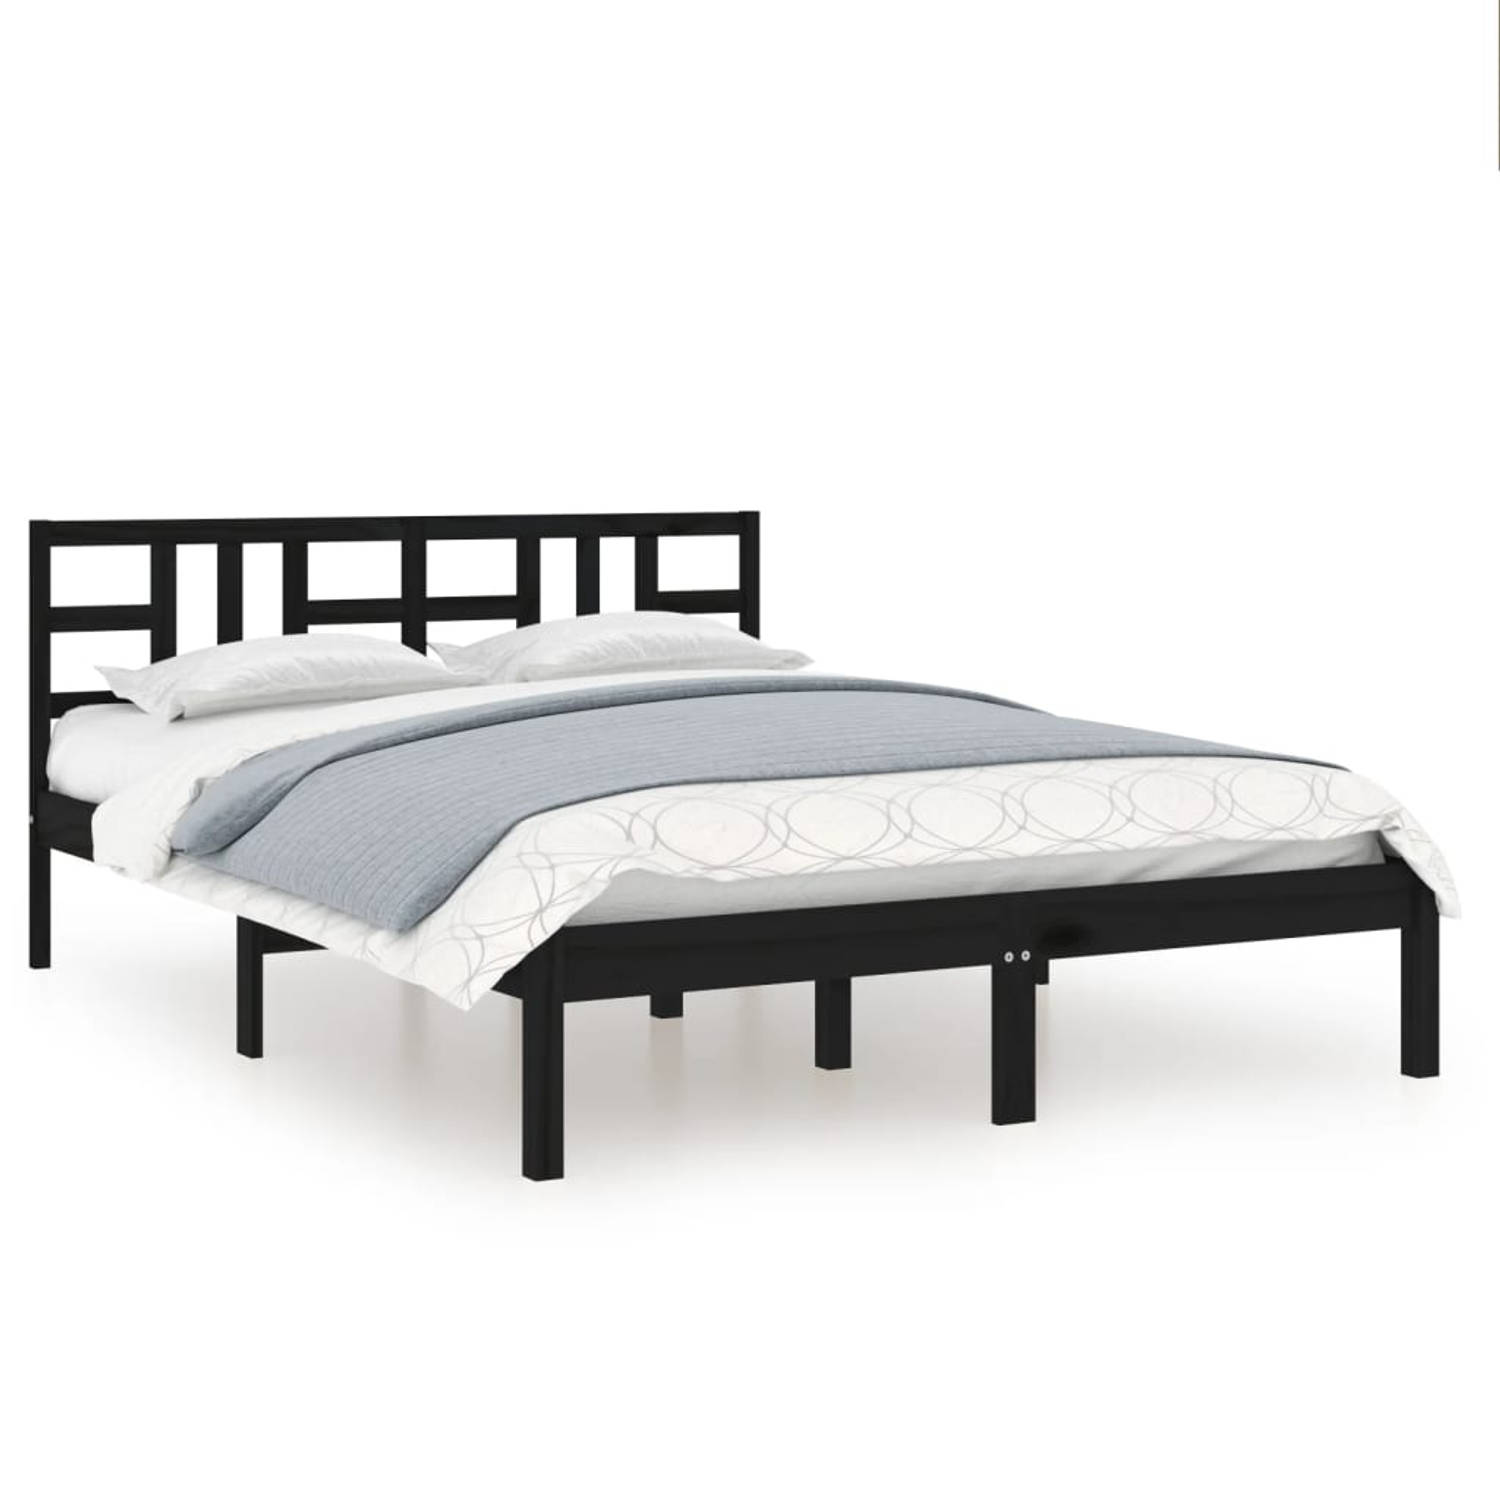 The Living Store Bedframe massief hout zwart 180x200 cm 6FT Super King - Bedframe - Bedframes - Tweepersoonsbed - Bed - Bedombouw - Dubbel Bed - Frame - Bed Frame - Ledikant - Hout